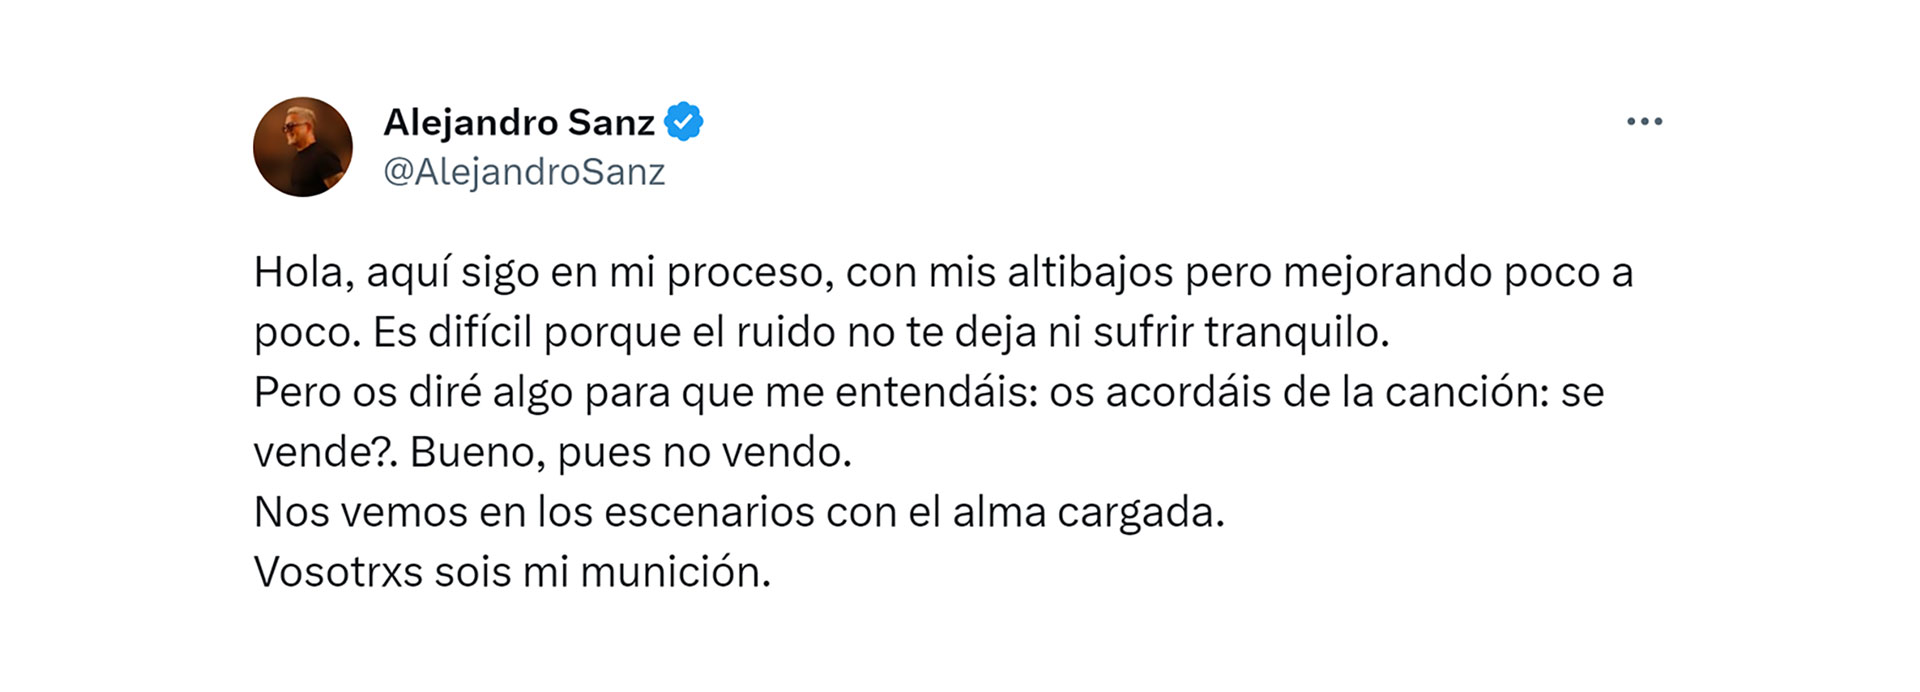 El mensaje de Alejandro Sanz para sus seguidores (Twitter)